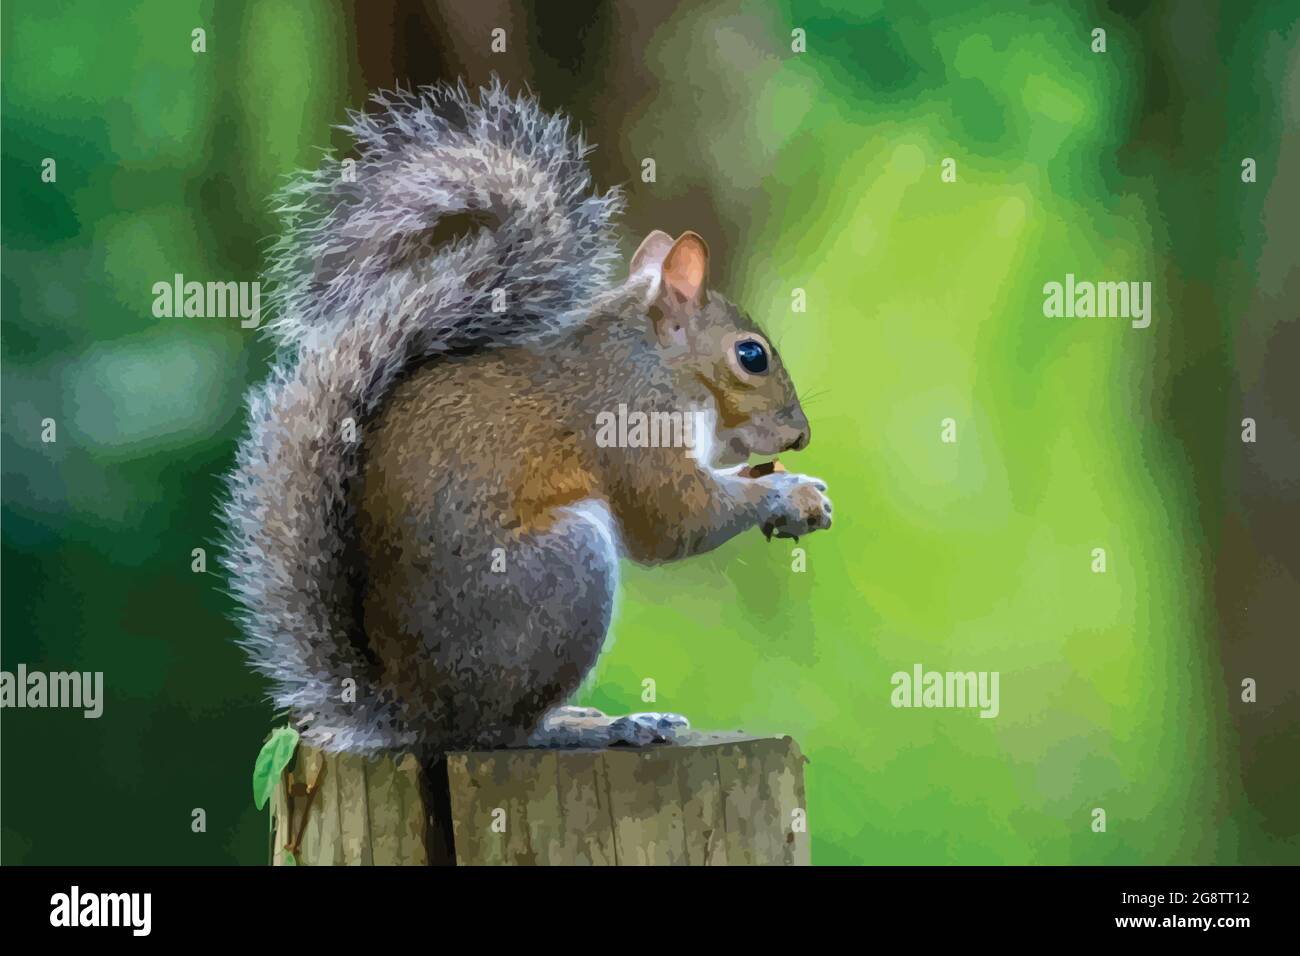 Ein Vektor von grauem Eichhörnchen sitzt auf einem Zaun essen eine Eichel, Wildtierfotografie, Naturfotografie. Stock Vektor